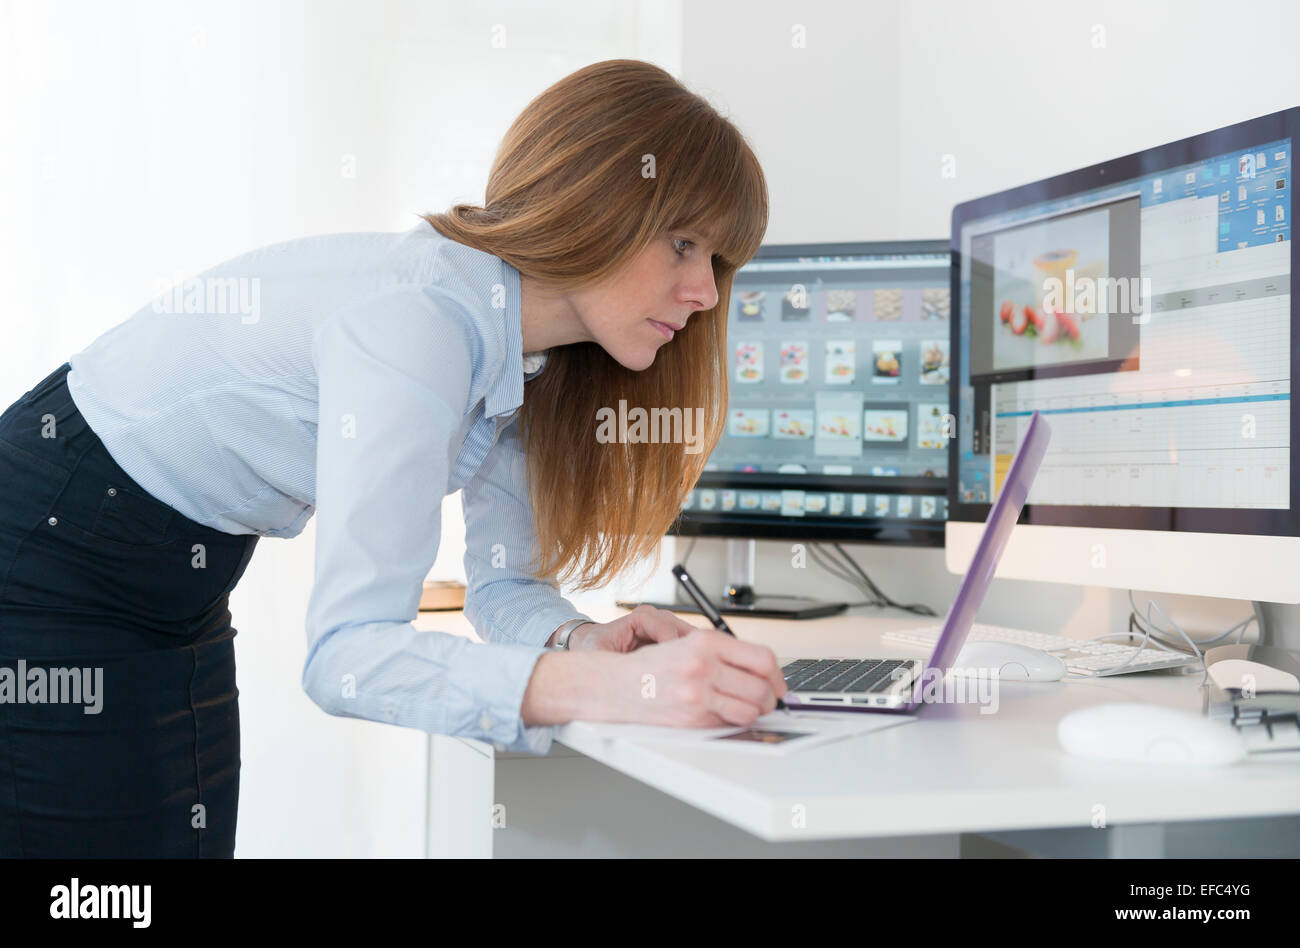 Une femme travaillant dans un bureau à un bureau, l'édition d'un magazine. Banque D'Images